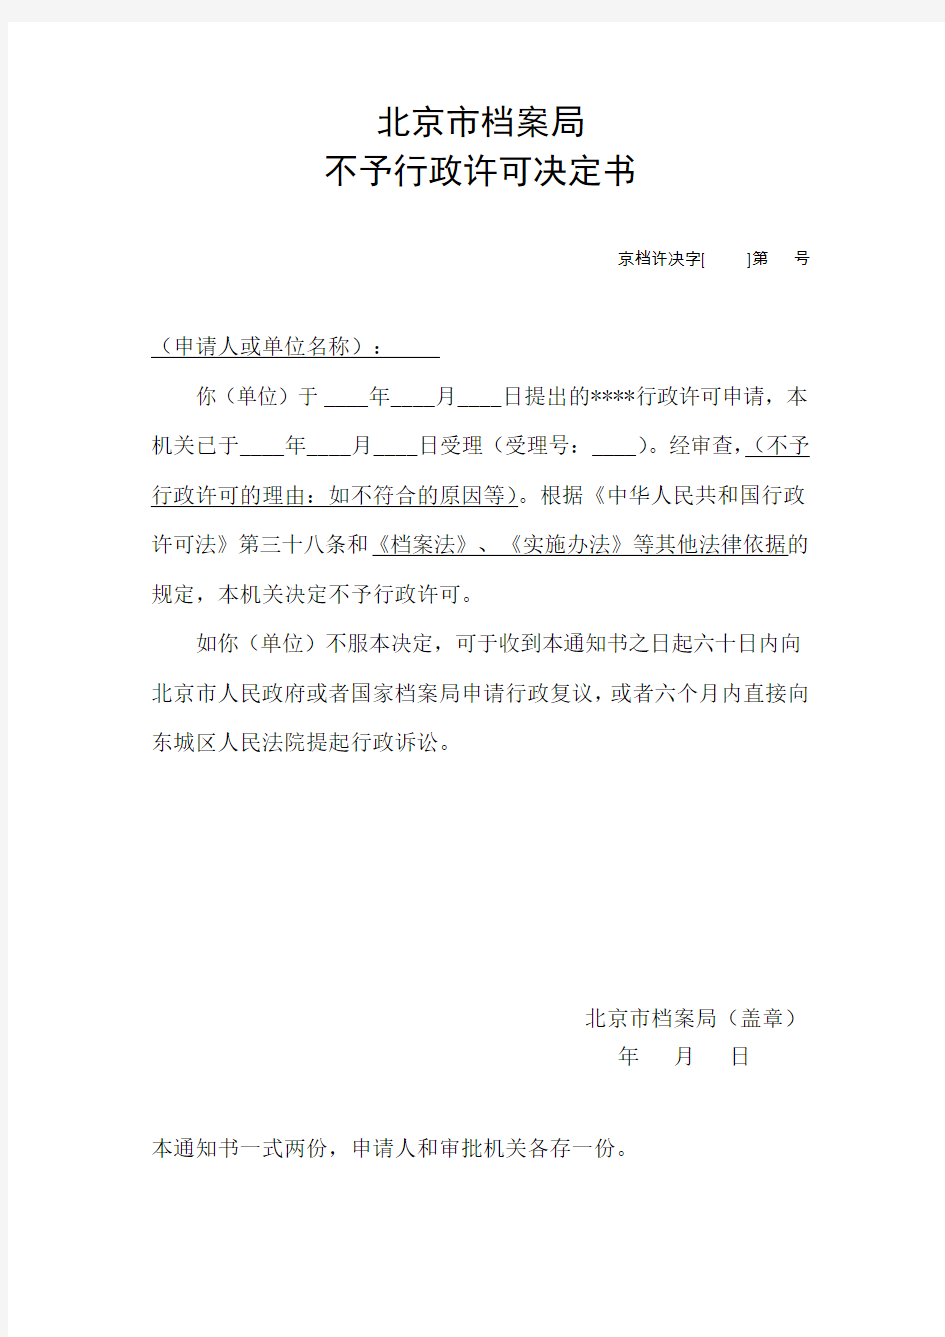 北京市档案局不予行政许可决定书样本